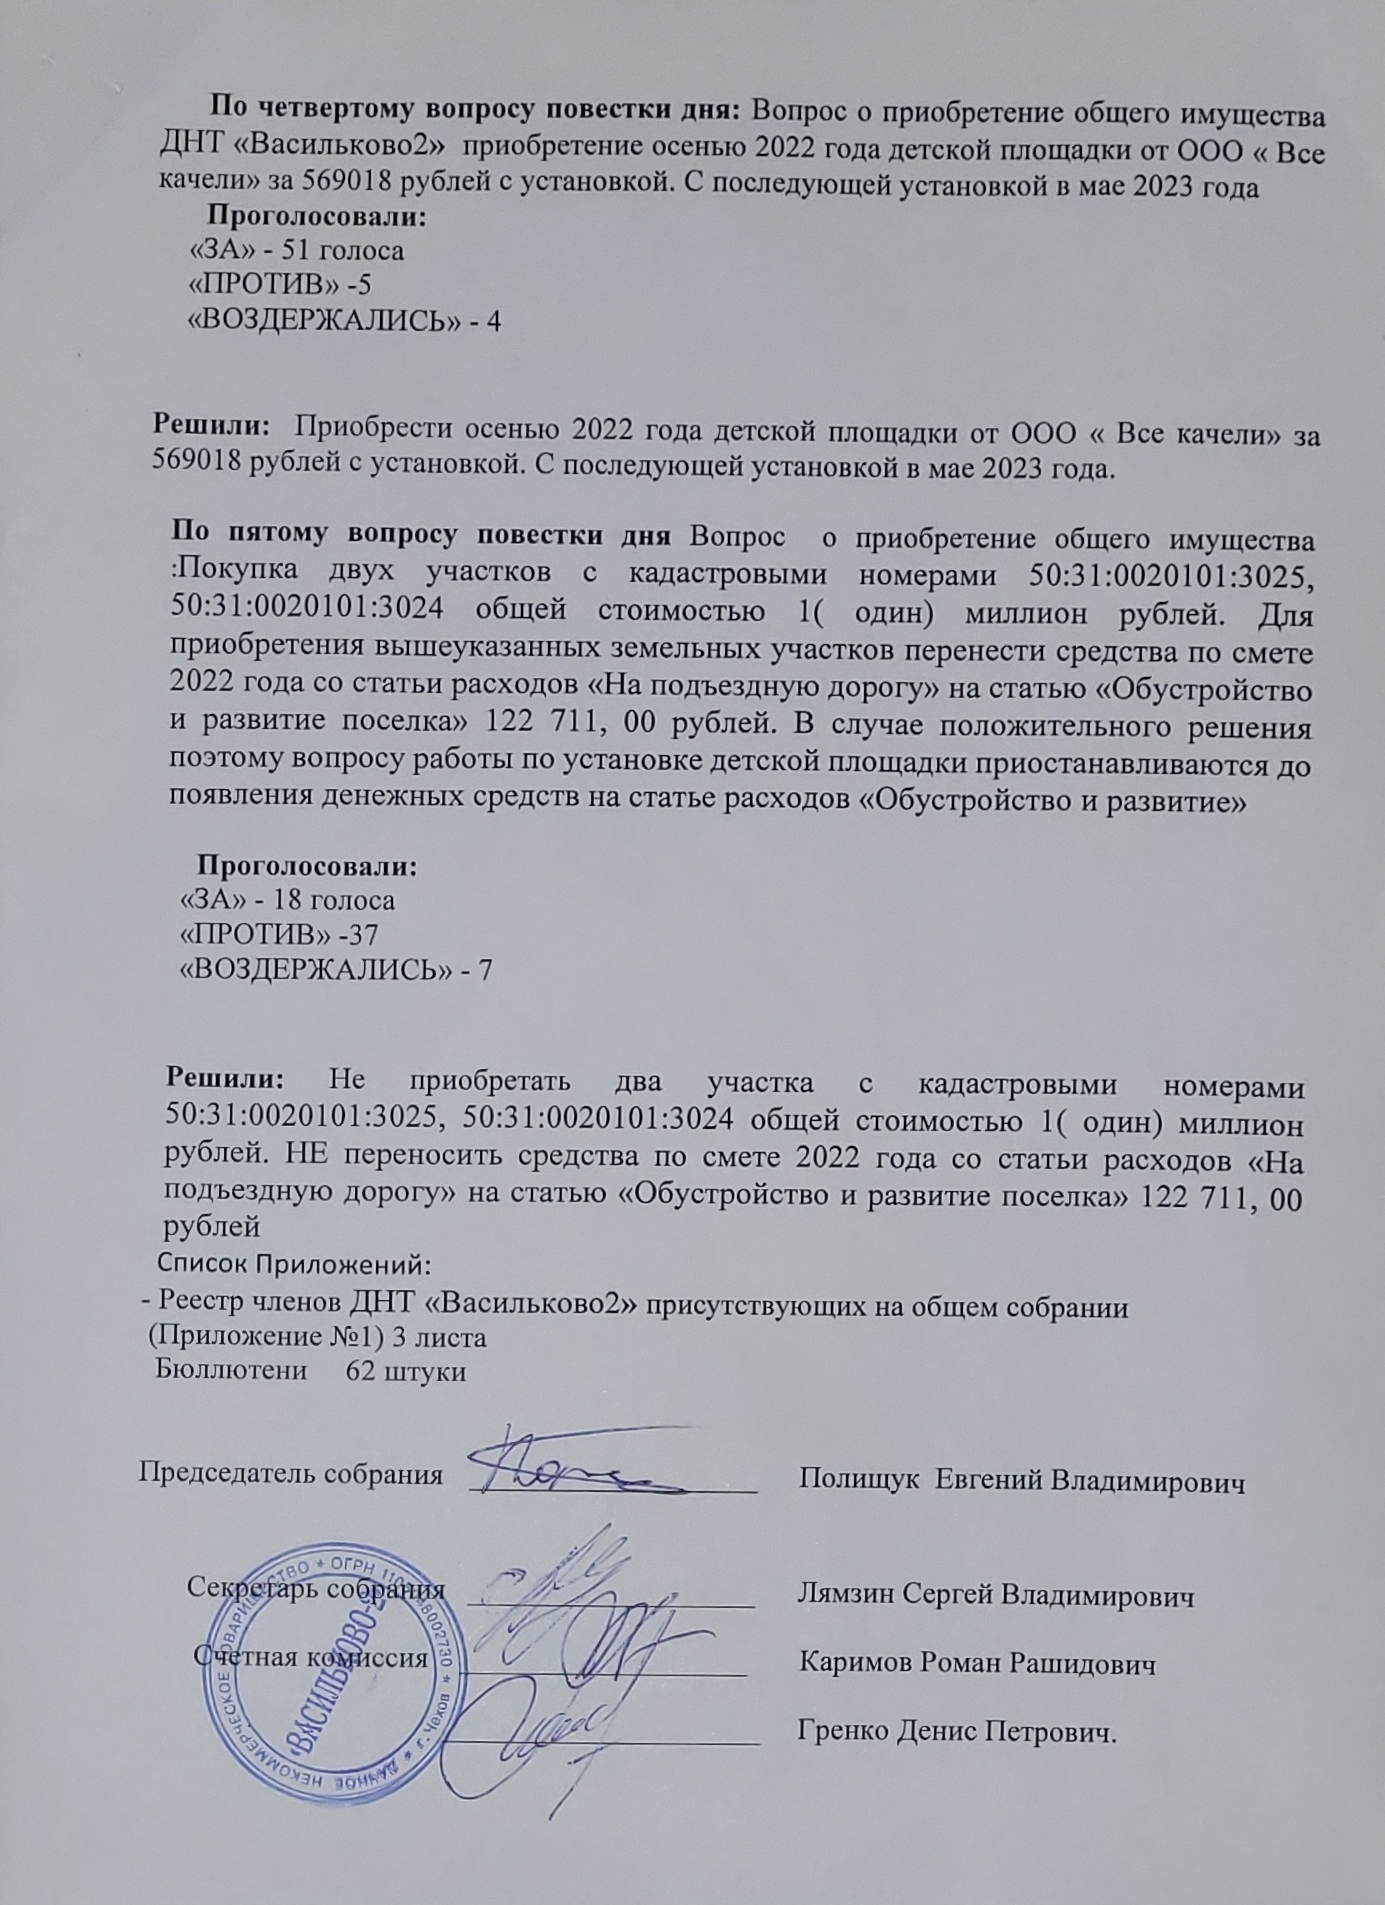 Протокол общего собрания Васильково-2 страница-3